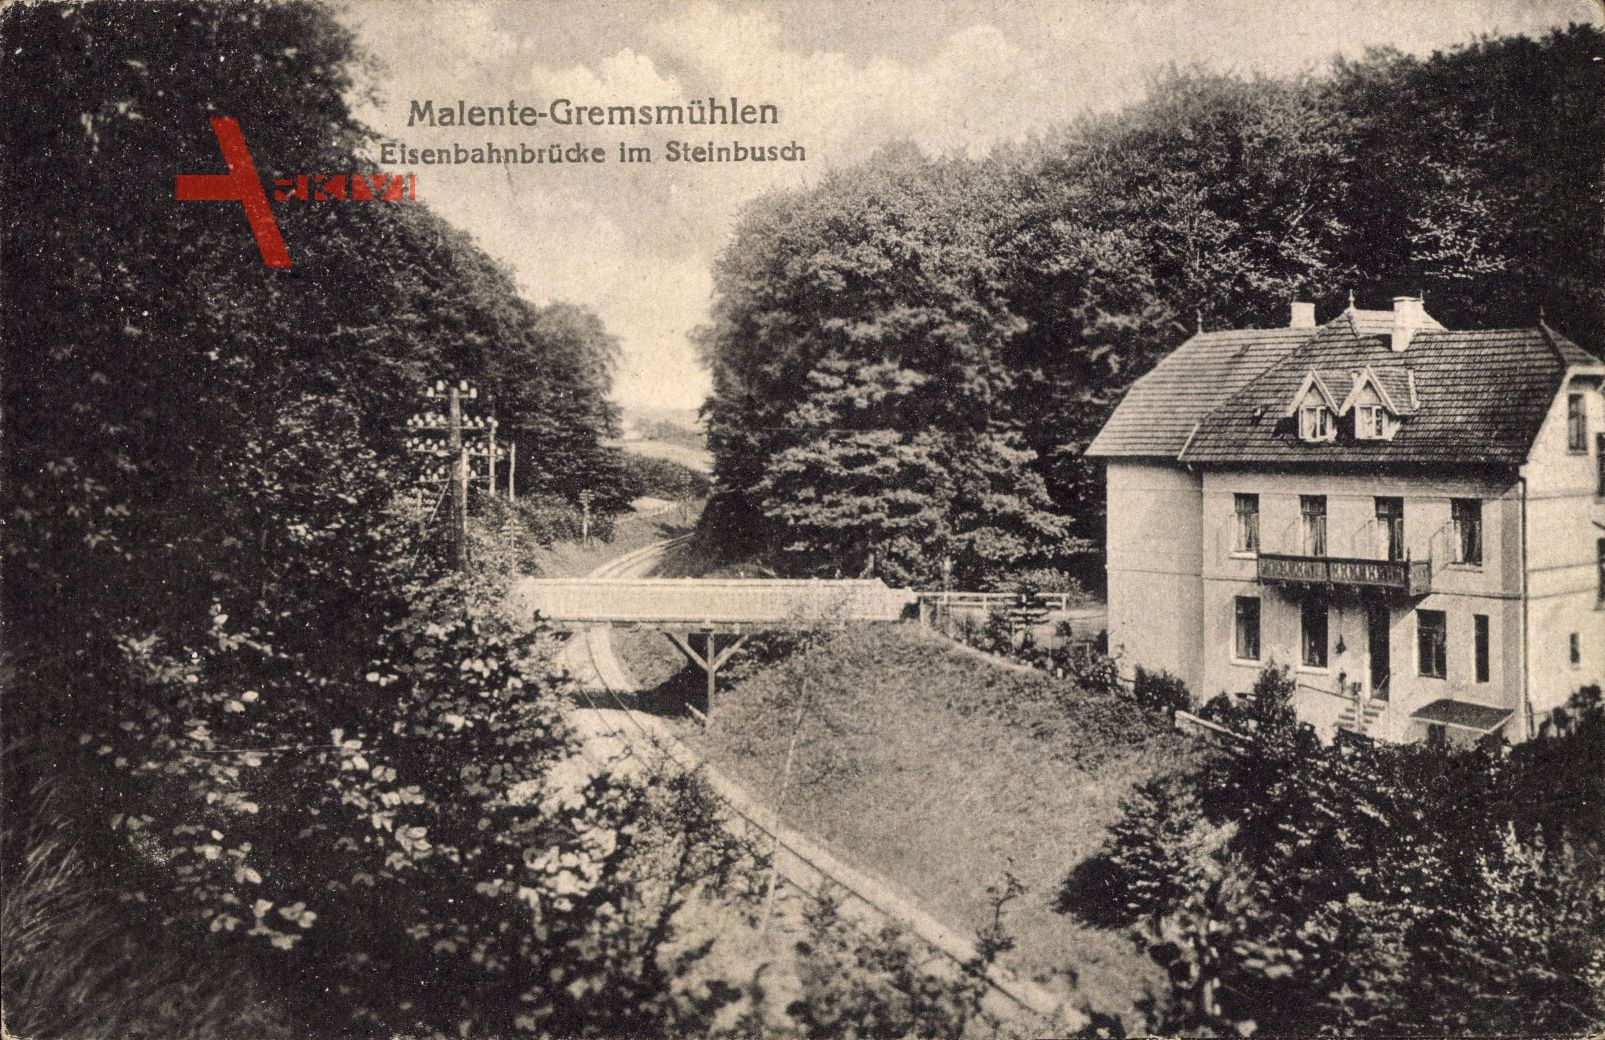 Malente Gremsmühlen in Ostholstein, Eisenbahnbrücke im Steinbusch